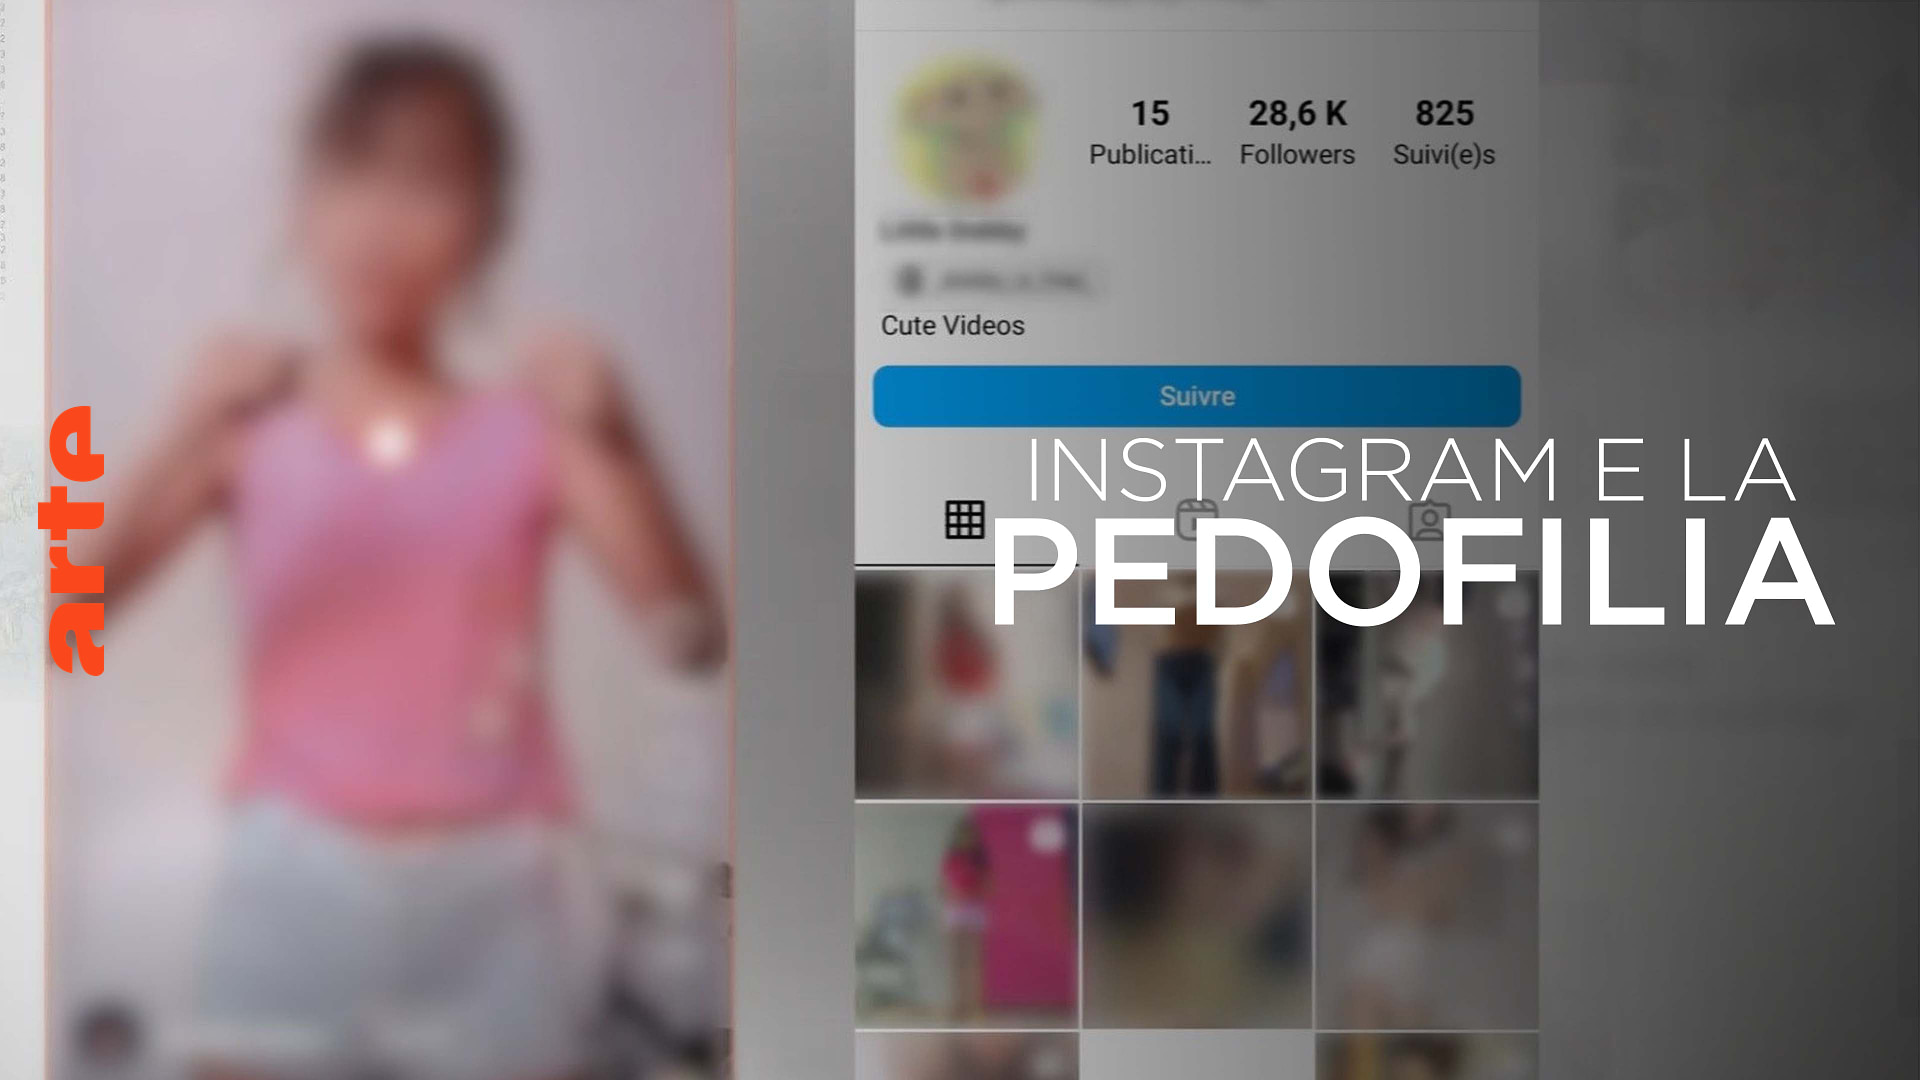 La pedofilia e le "falle" di Instagram - Guarda il documentario completo | ARTE in italiano